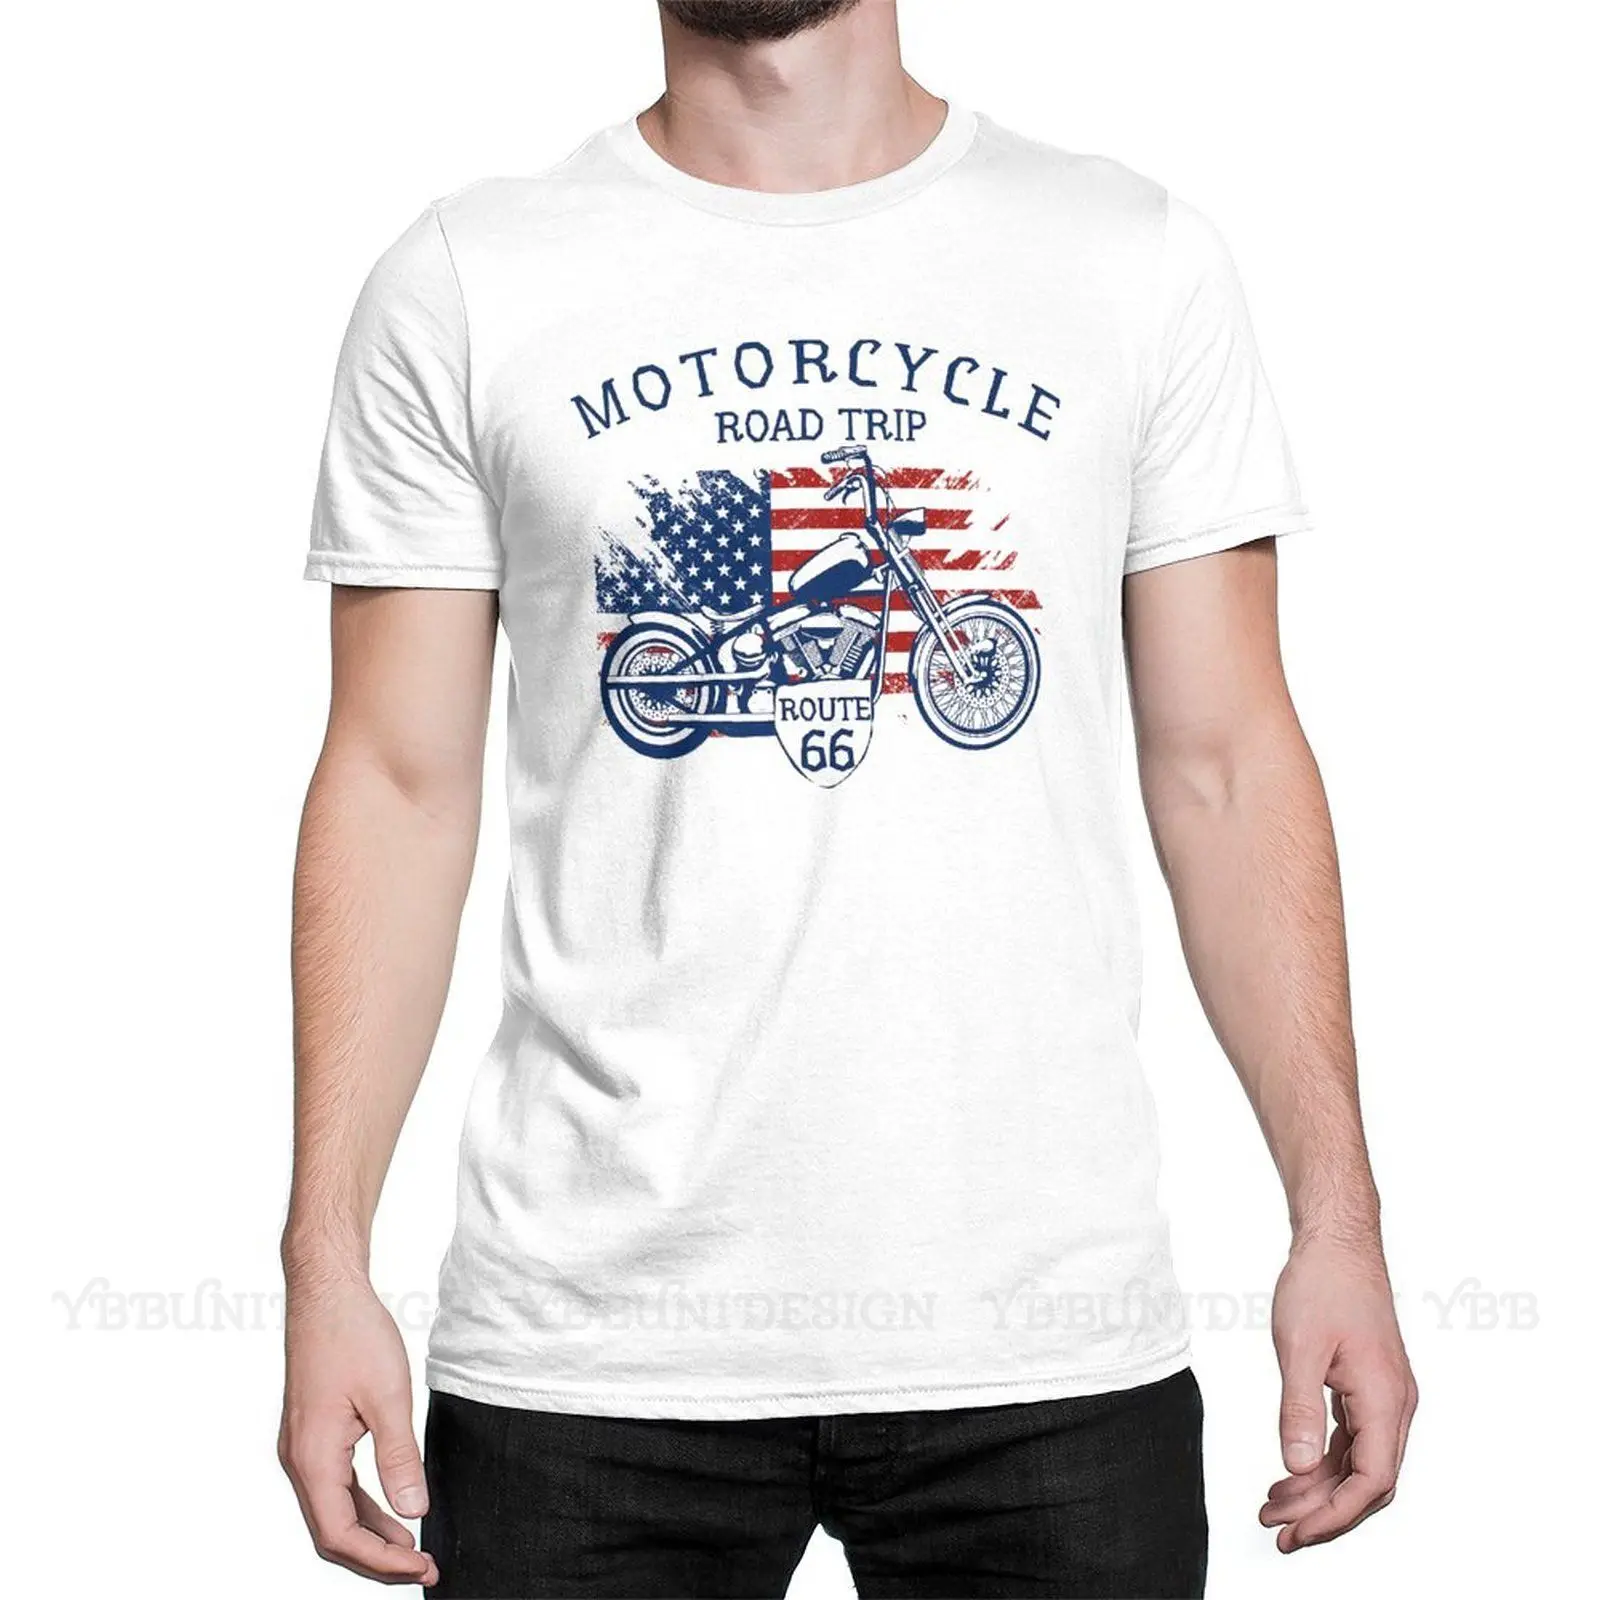 

Высококачественная забавная Мужская футболка с аниме юмором, рубашка из чистого хлопка для езды на мотоцикле и дороге, футболки в стиле Хар...